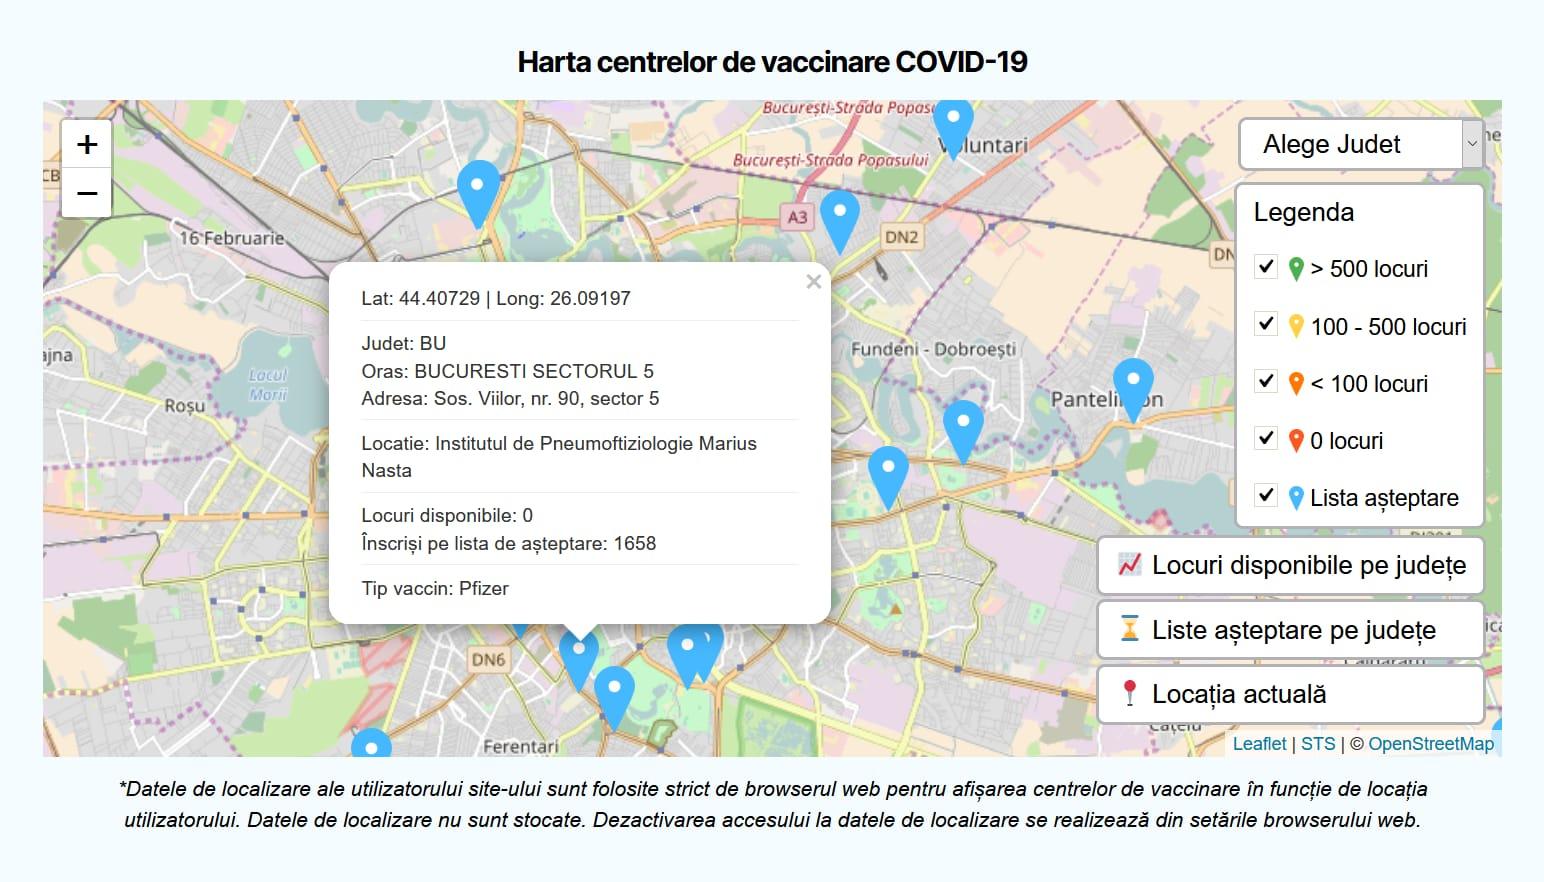 Harta centrelor pe tipuri de vaccin, disponibilă: pot fi văzute locurile libere